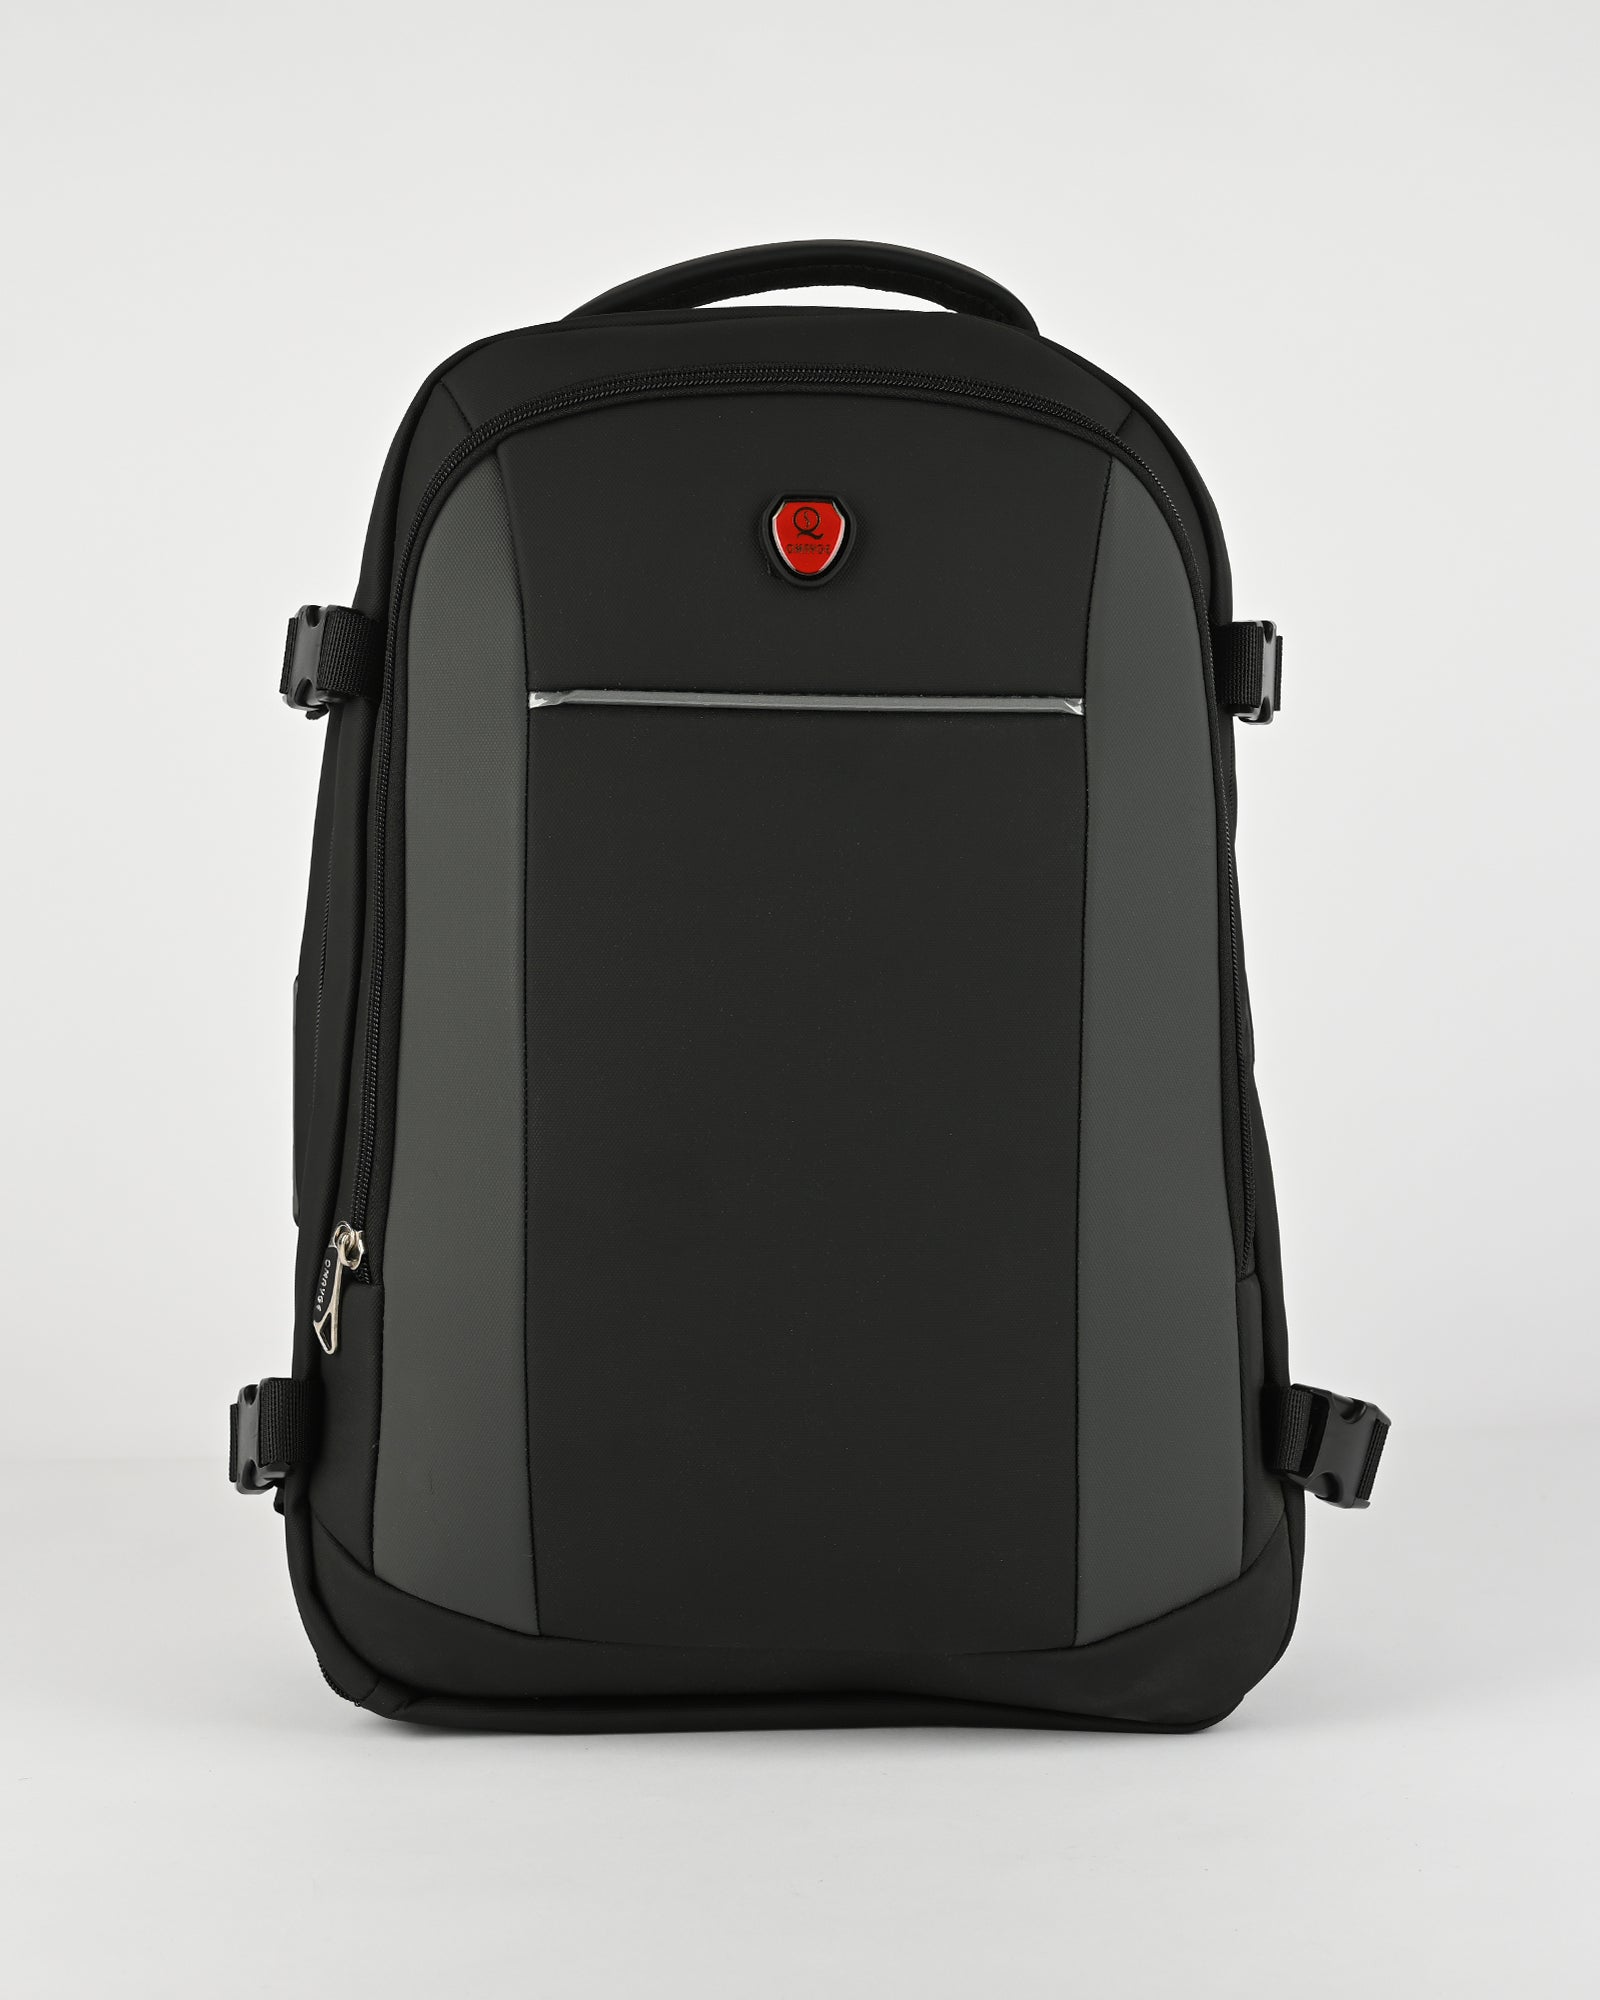 Multi functional backpack